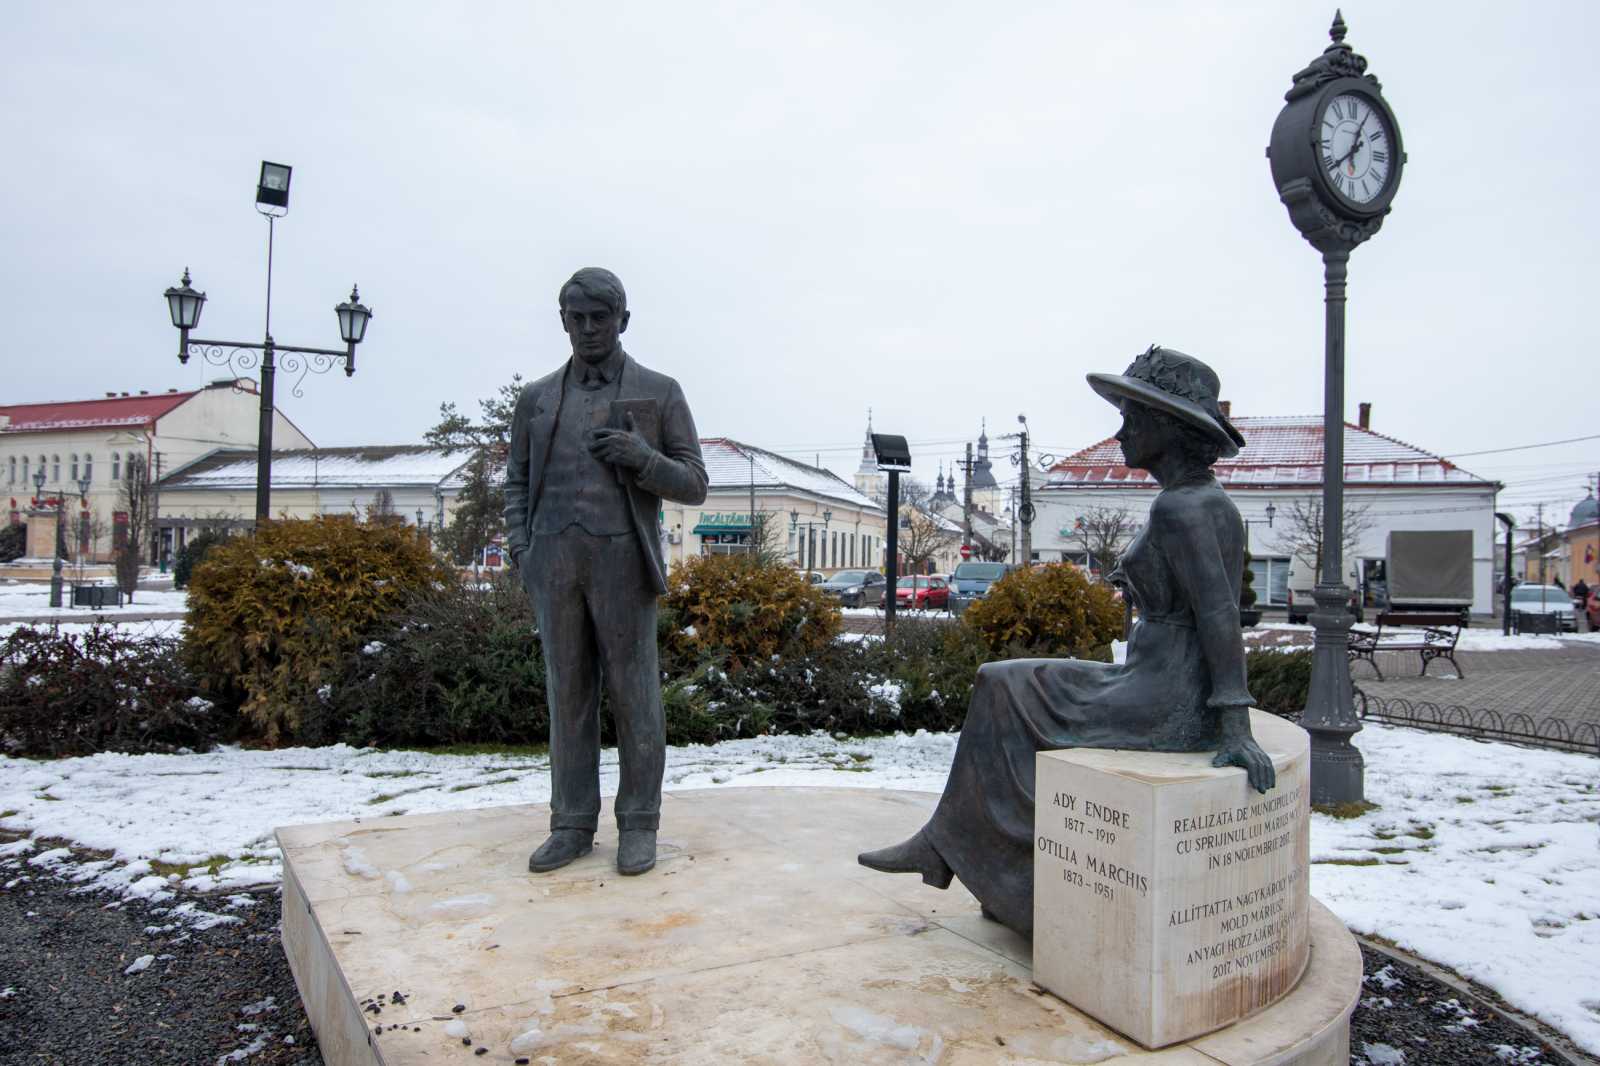 Ady Endre és Otilia Marchiș (Itóka) szobra Nagykároly főterén